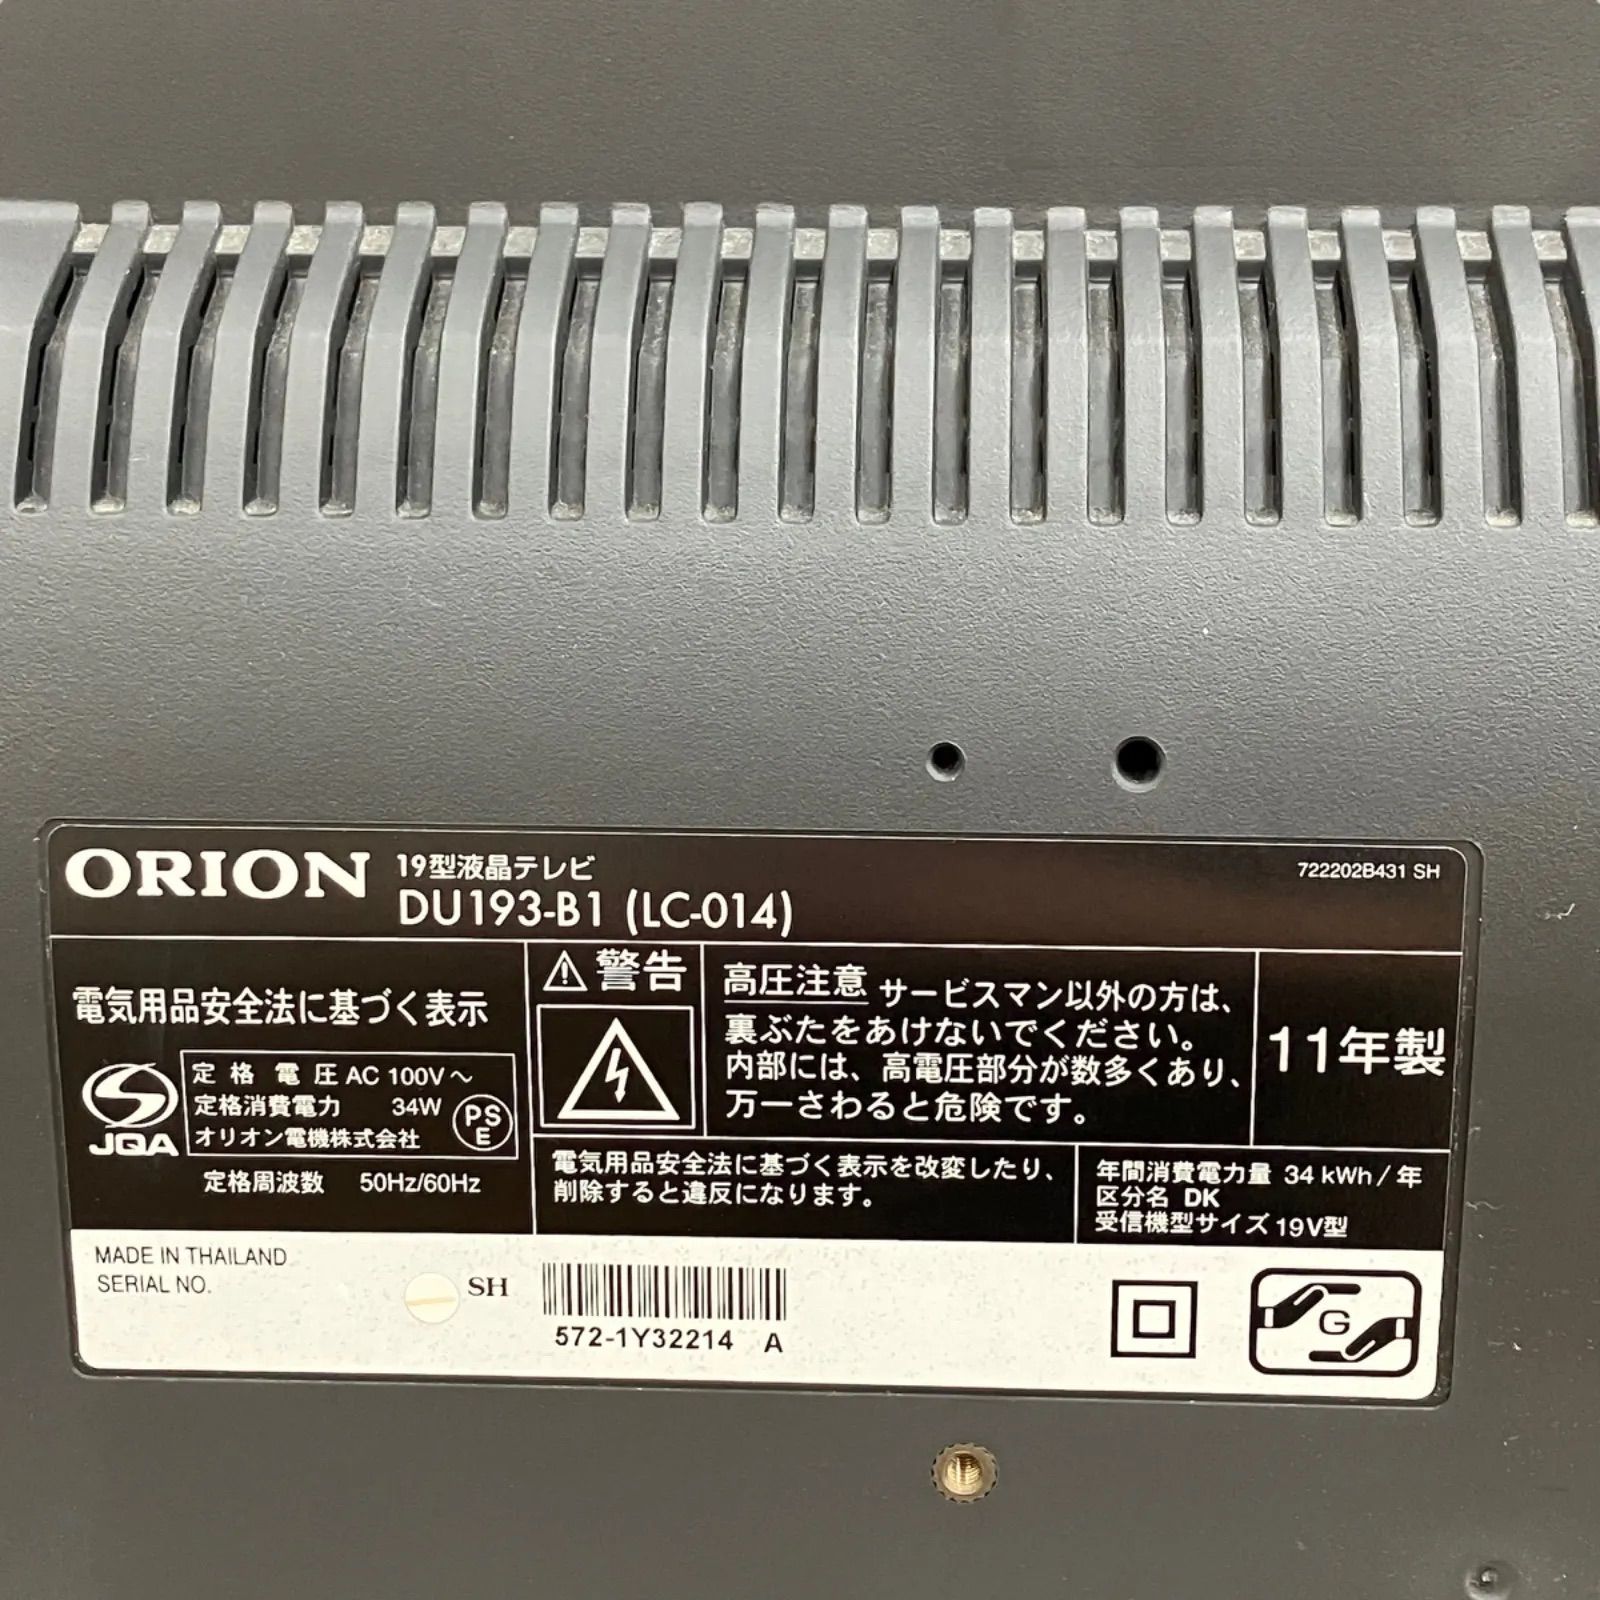 ORION 19型液晶テレビ DU193-B1(LC-014) - ☆もったいなーい☆12/31～1